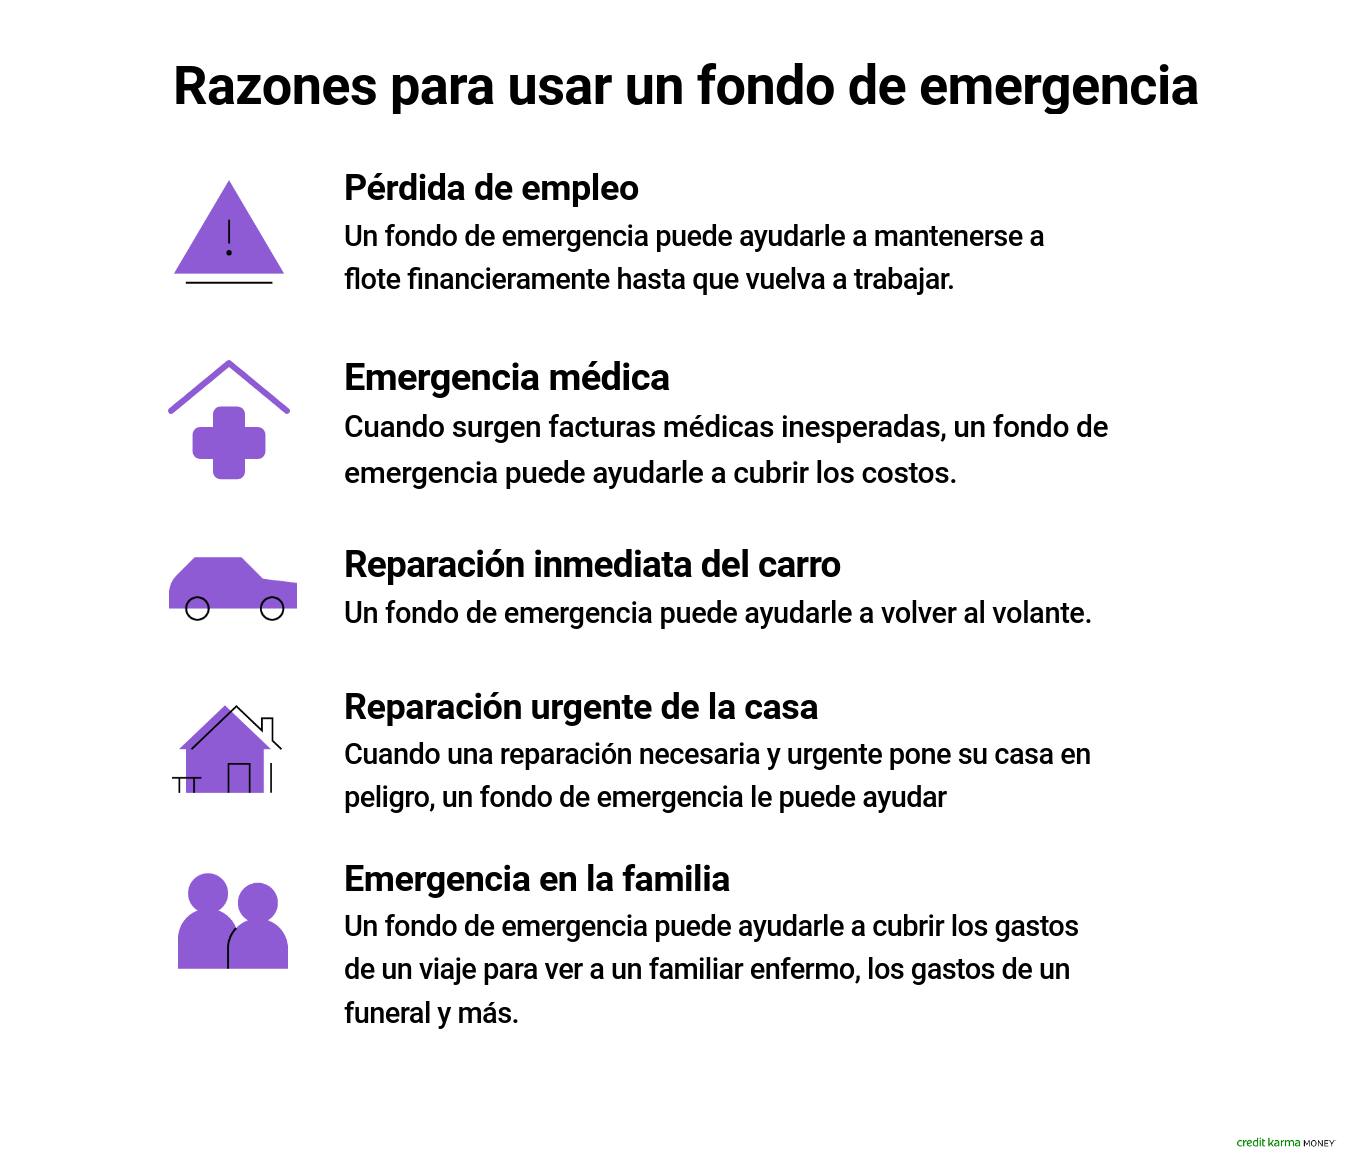 spanish-mned_emergencyfund